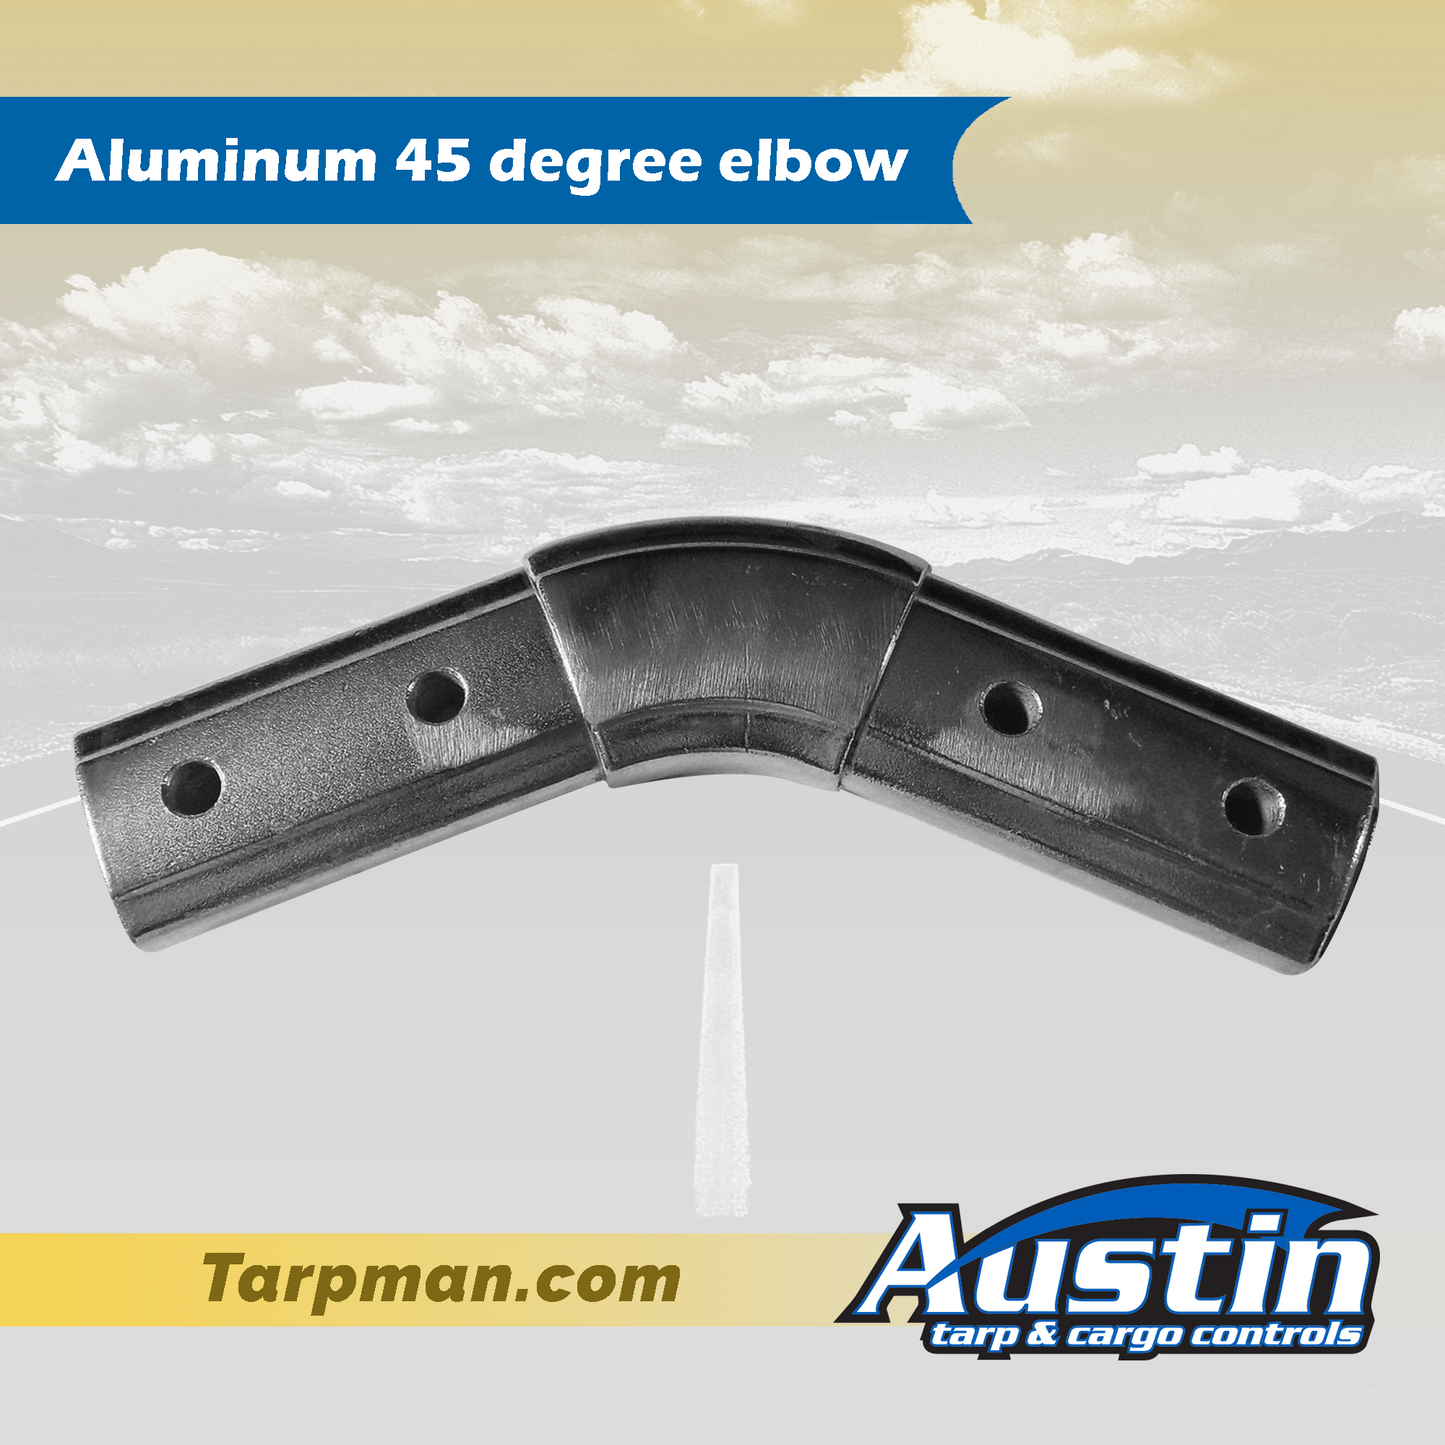 Aluminum 45 degree elbow